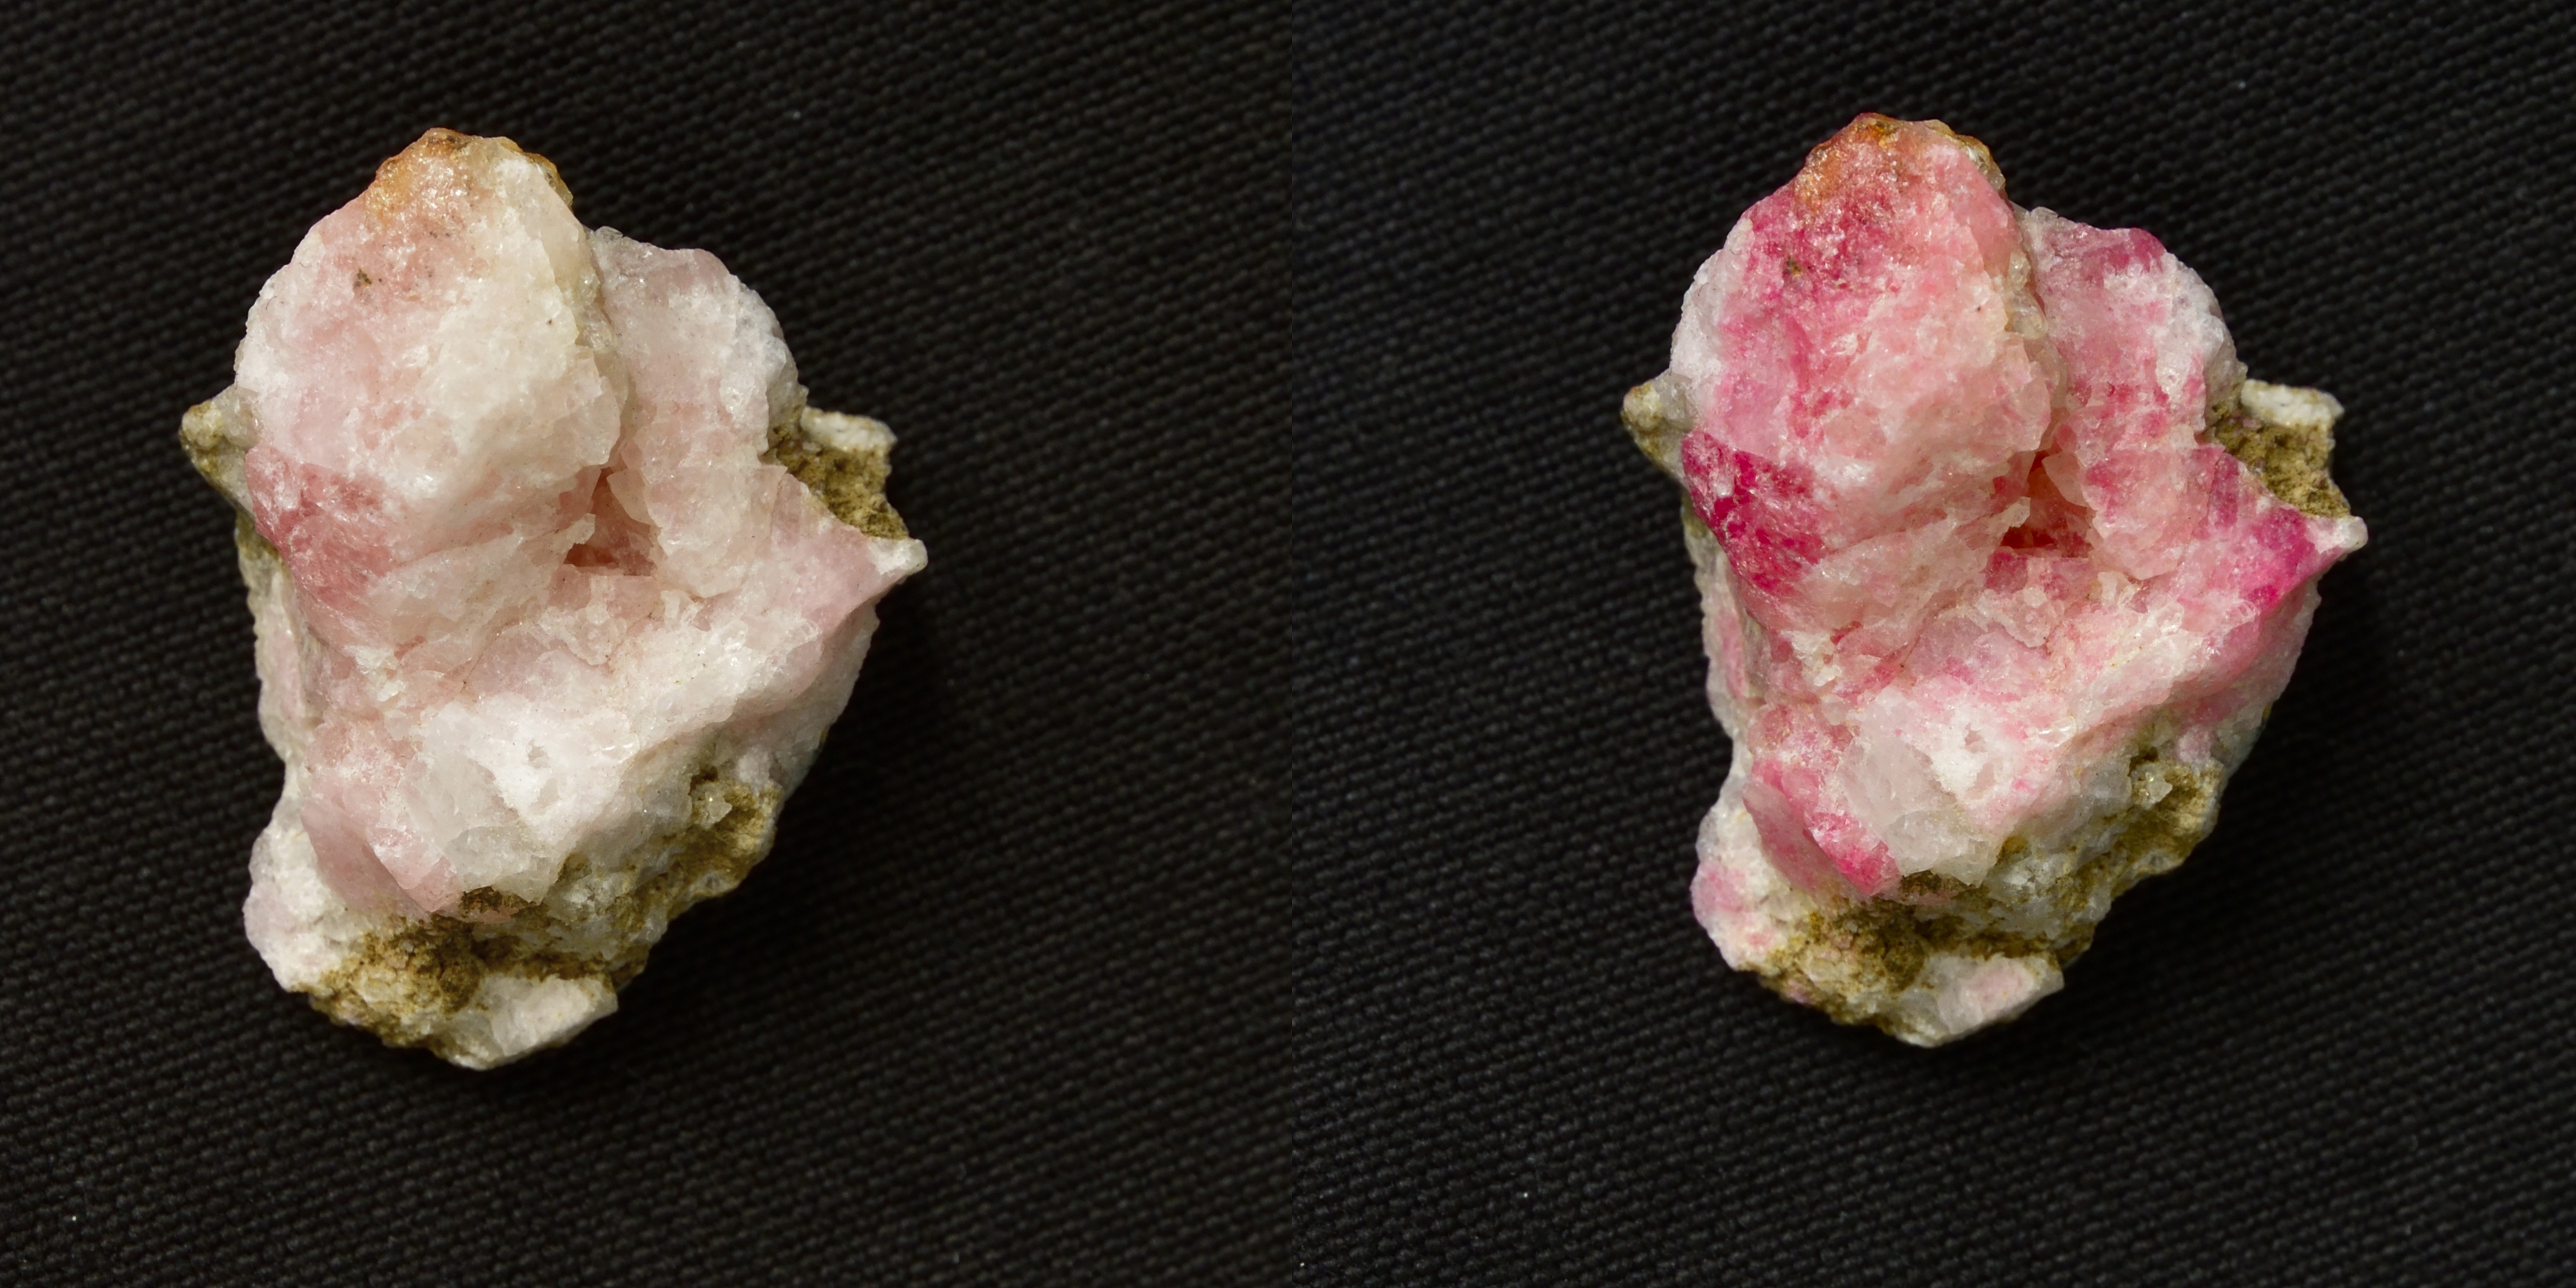 Vzácný minerál tugtupit patří do skupiny sodalitu. Vystaven UV záření se barví do růžova. Návrat zpět k bílé barvě trvá několik hodin, protože se atomy ve struktuře přesouvají na delší vzdálenosti. (Vzorek je z Grónska) Foto: Sami Vuori, University o